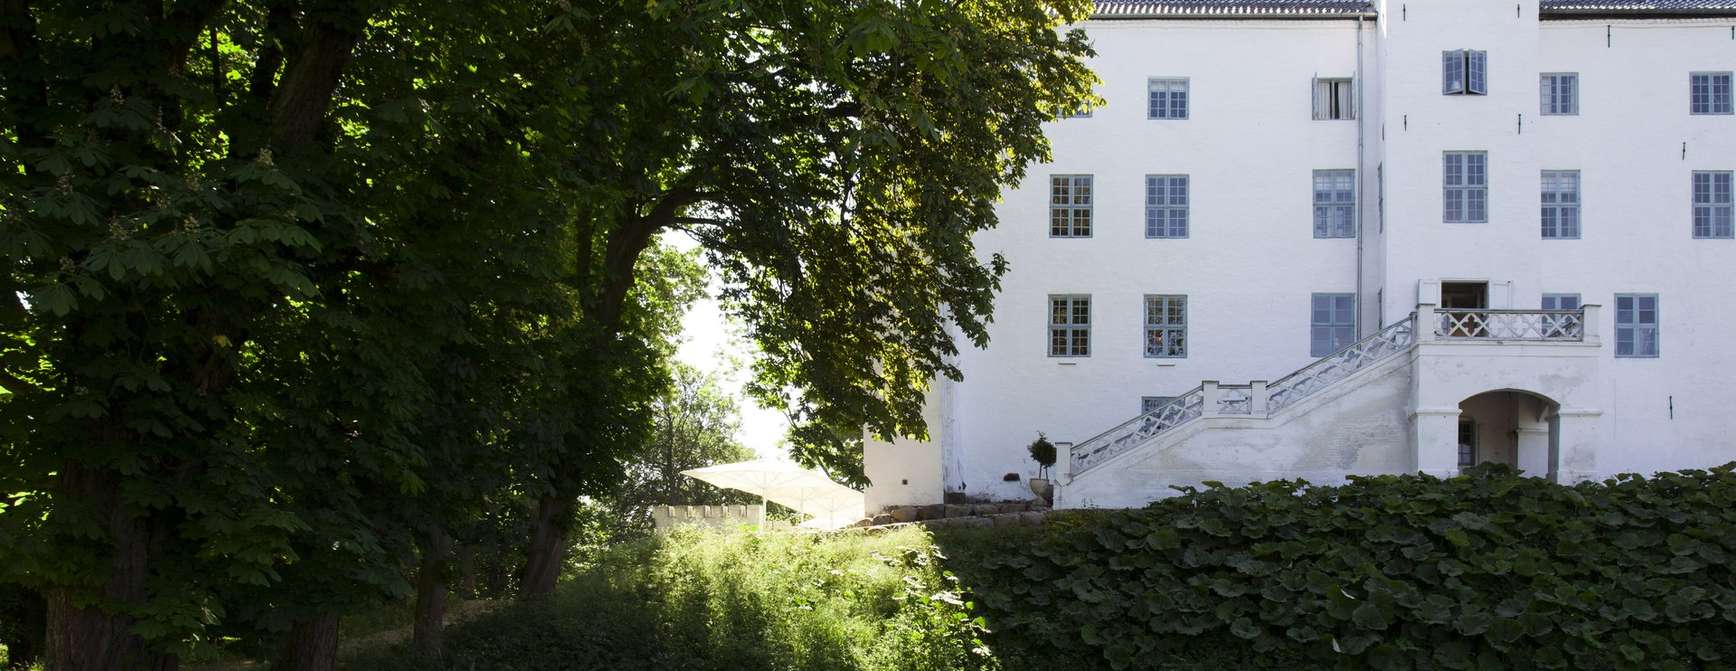 Foto av Dragsholm Slot